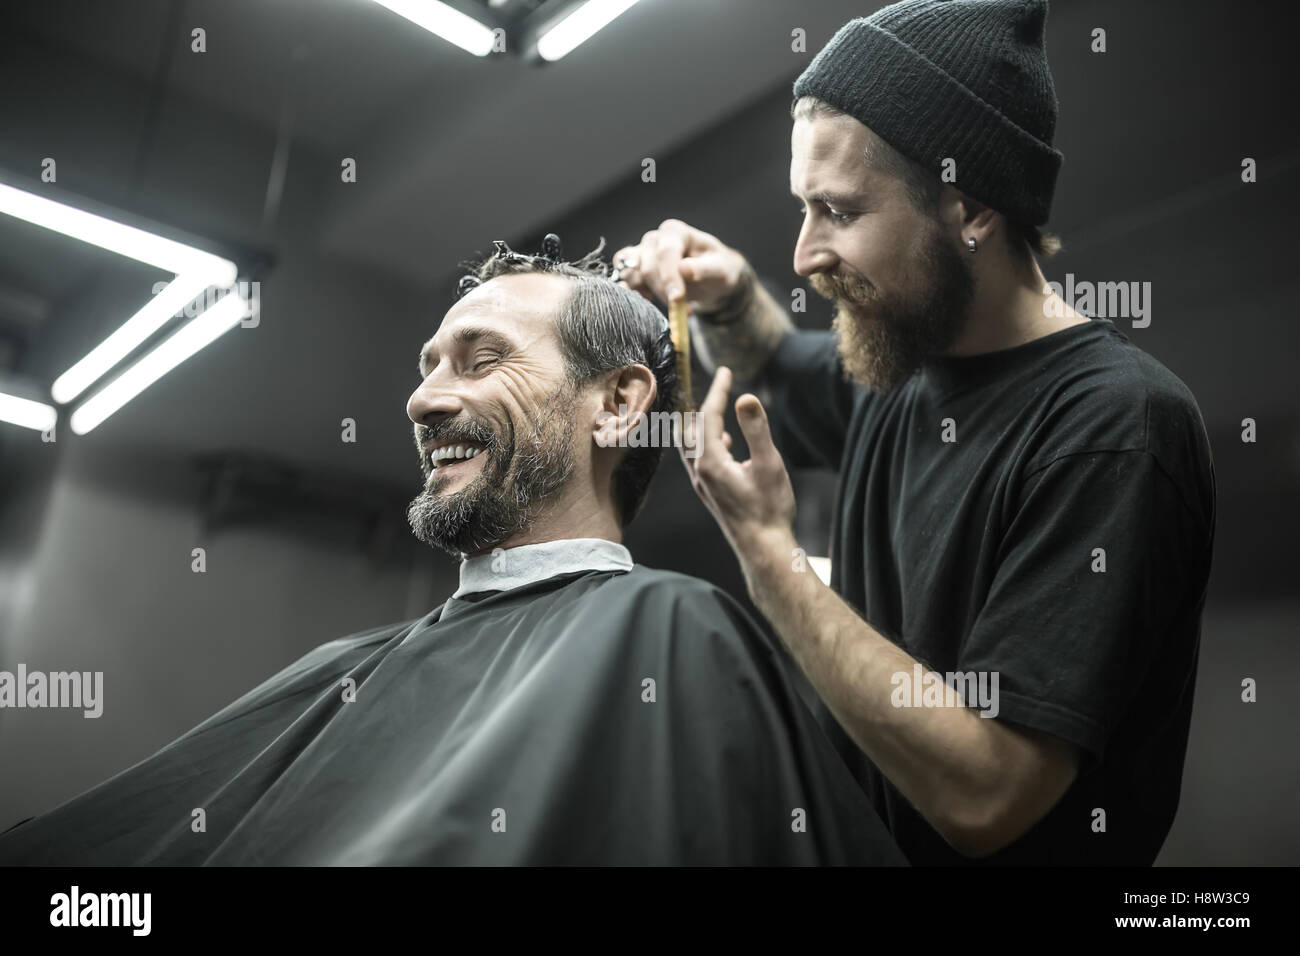 Cutting hair in barbershop Stock Photo - Alamy